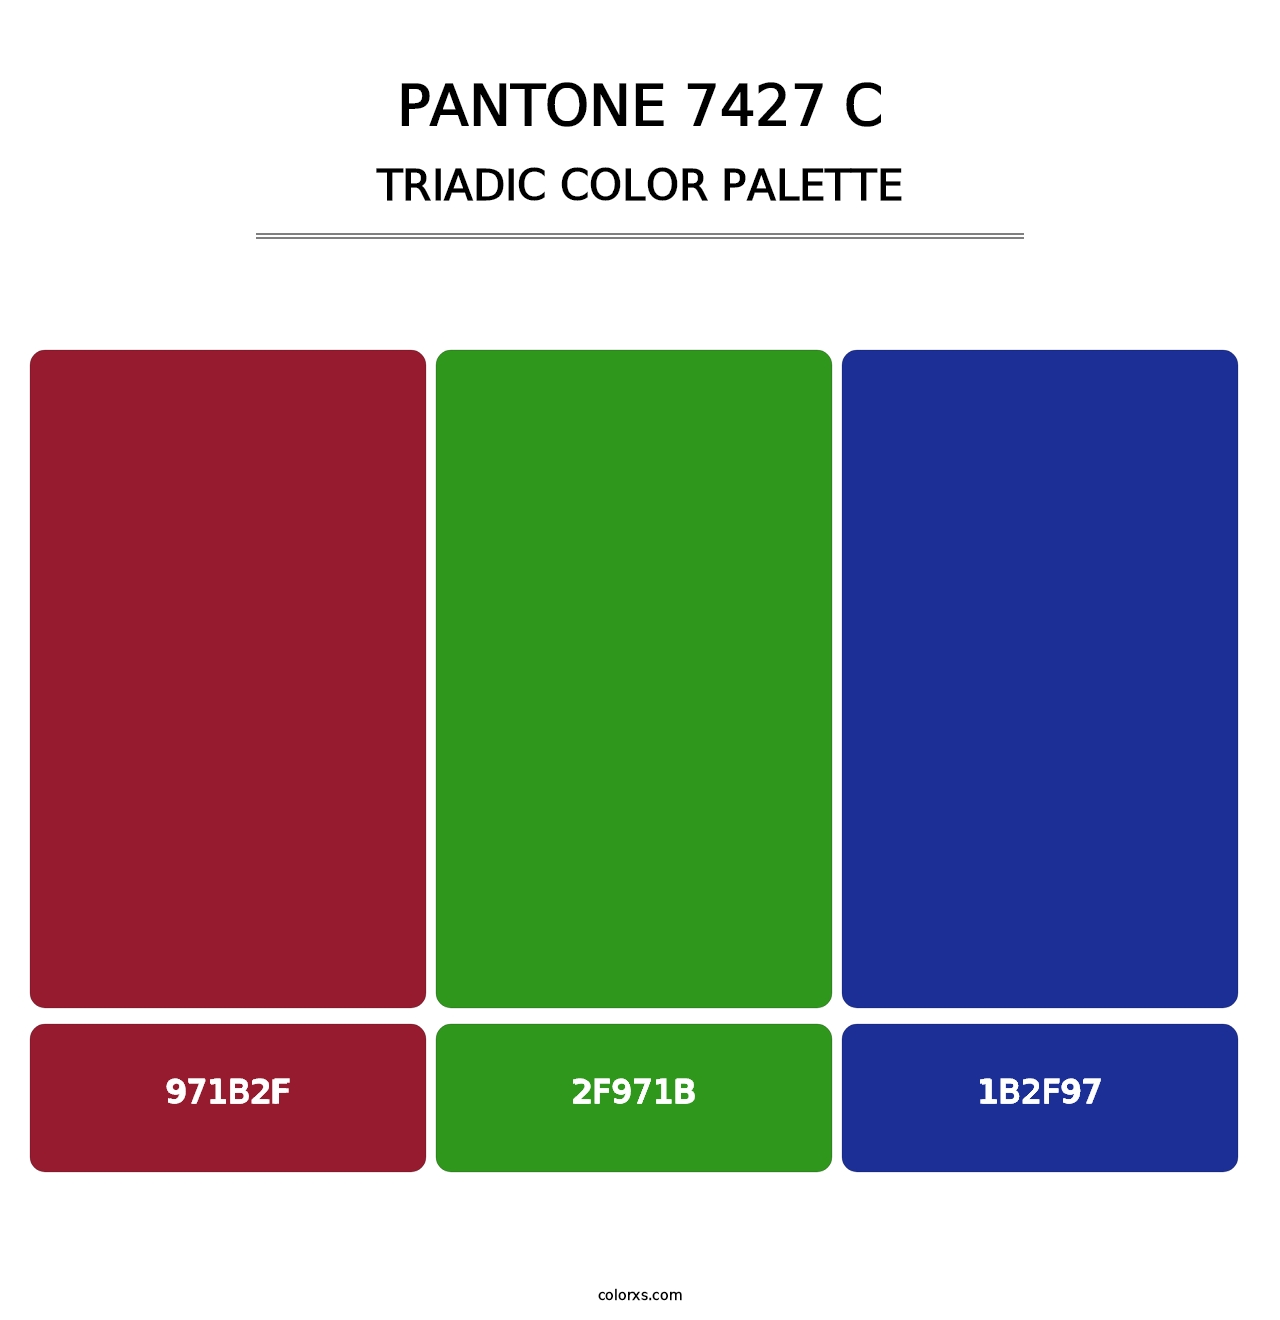 PANTONE 7427 C - Triadic Color Palette